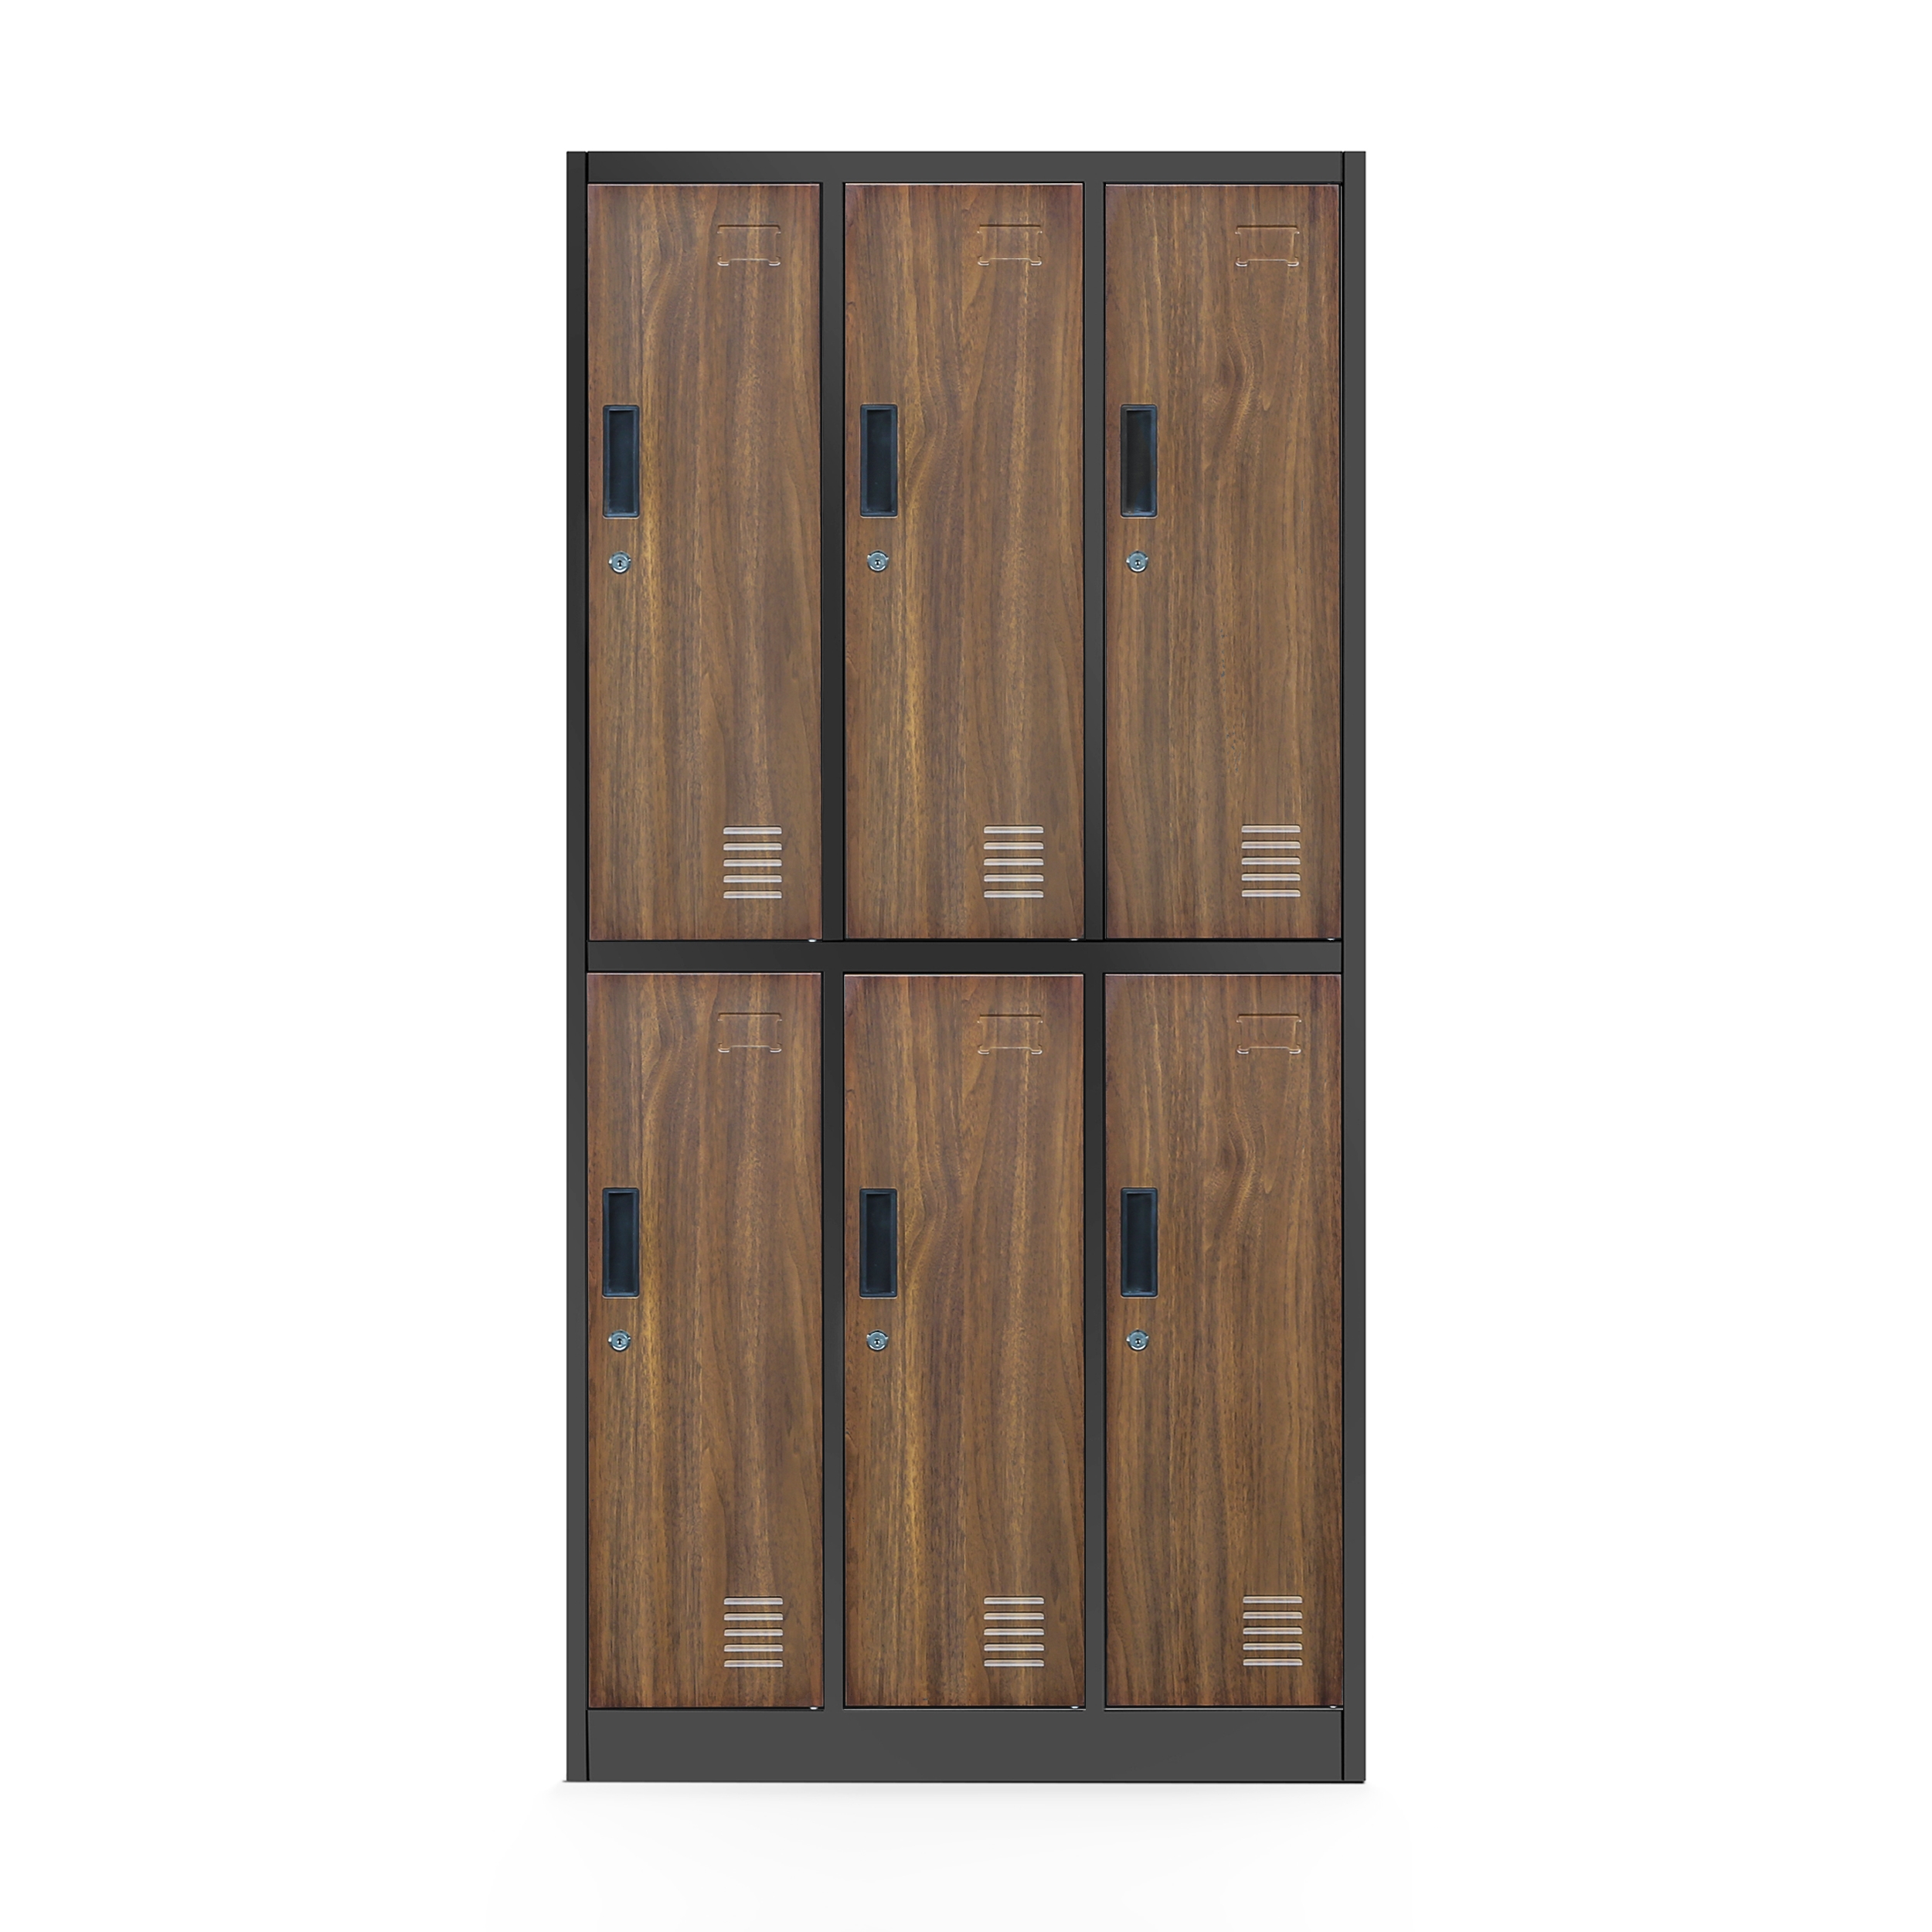 JAN NOWAK Eco Design model IGOR 900 x 1850 x 450 szafa socjalna szafa loft 6-drzwiowa: antracytowa/orzech - Jan Nowak zdjęcie 1